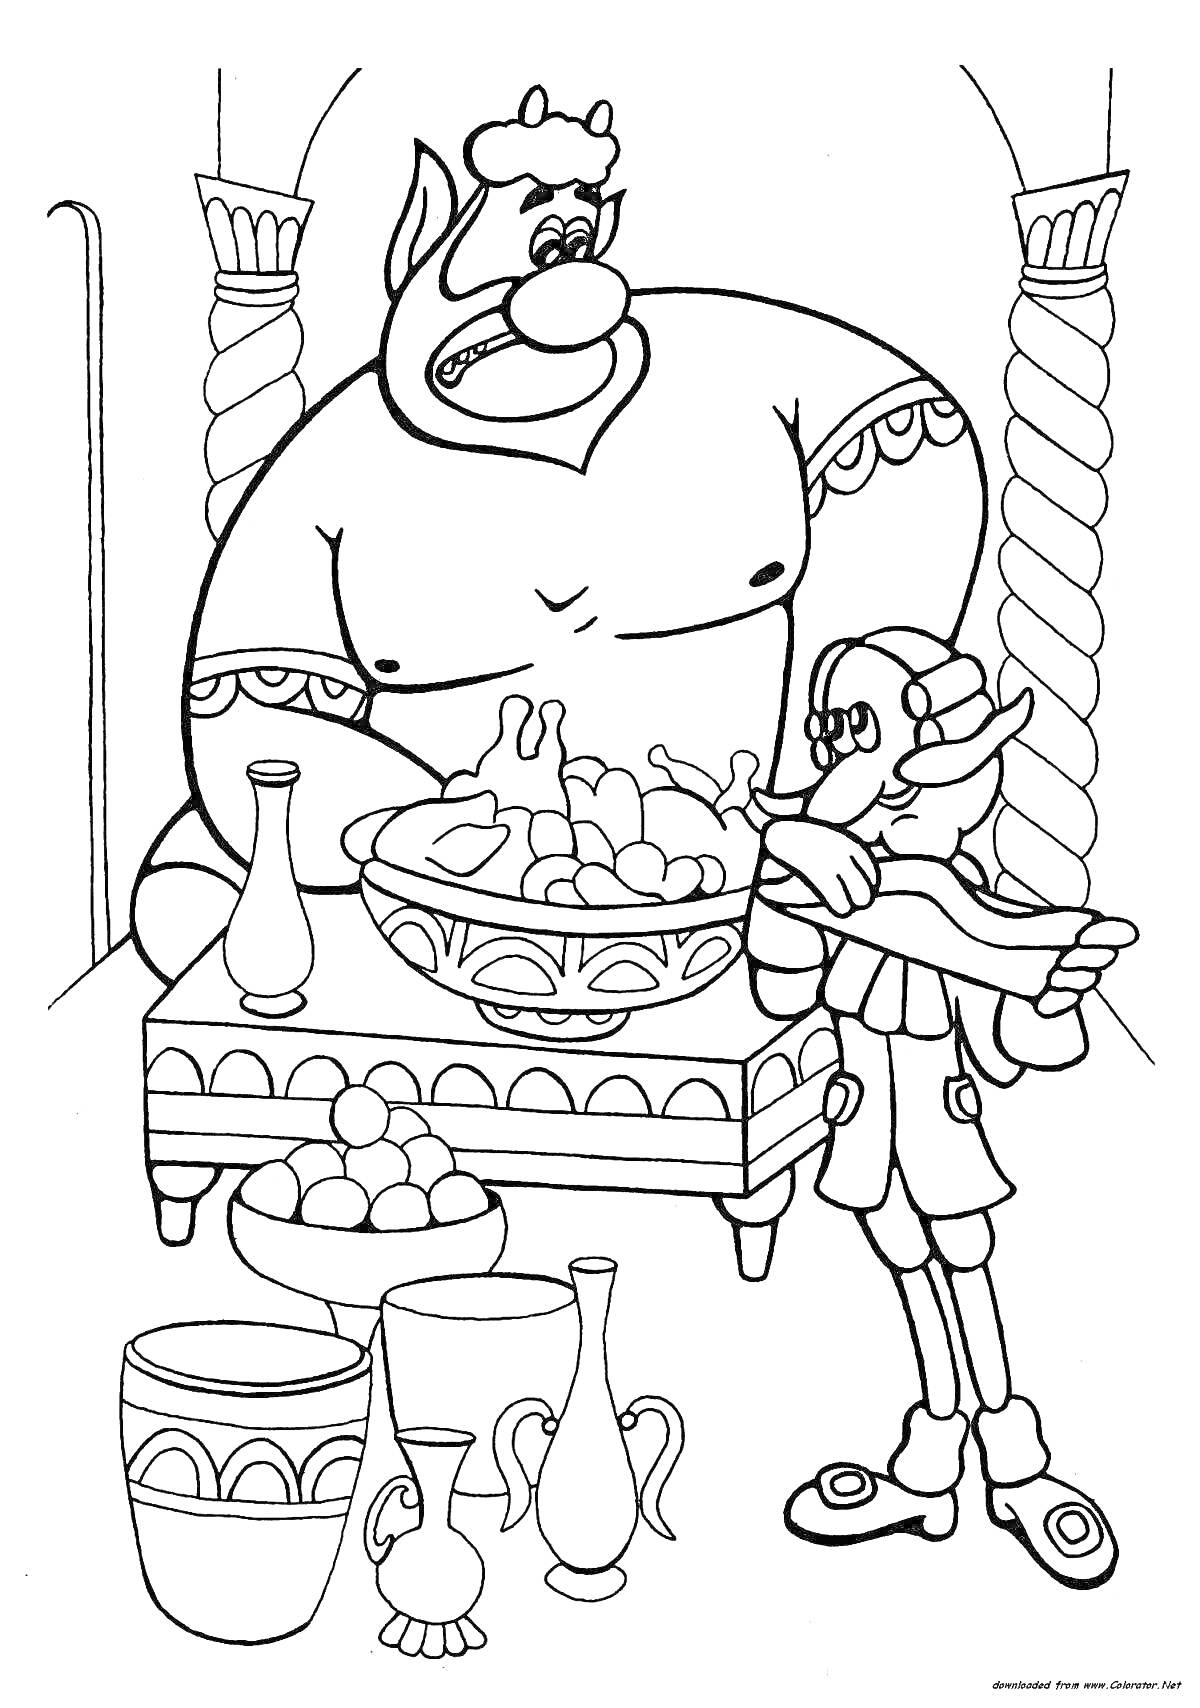 Раскраска Барон Мюнхаузен и великан в комнате с вазами и столом с едой